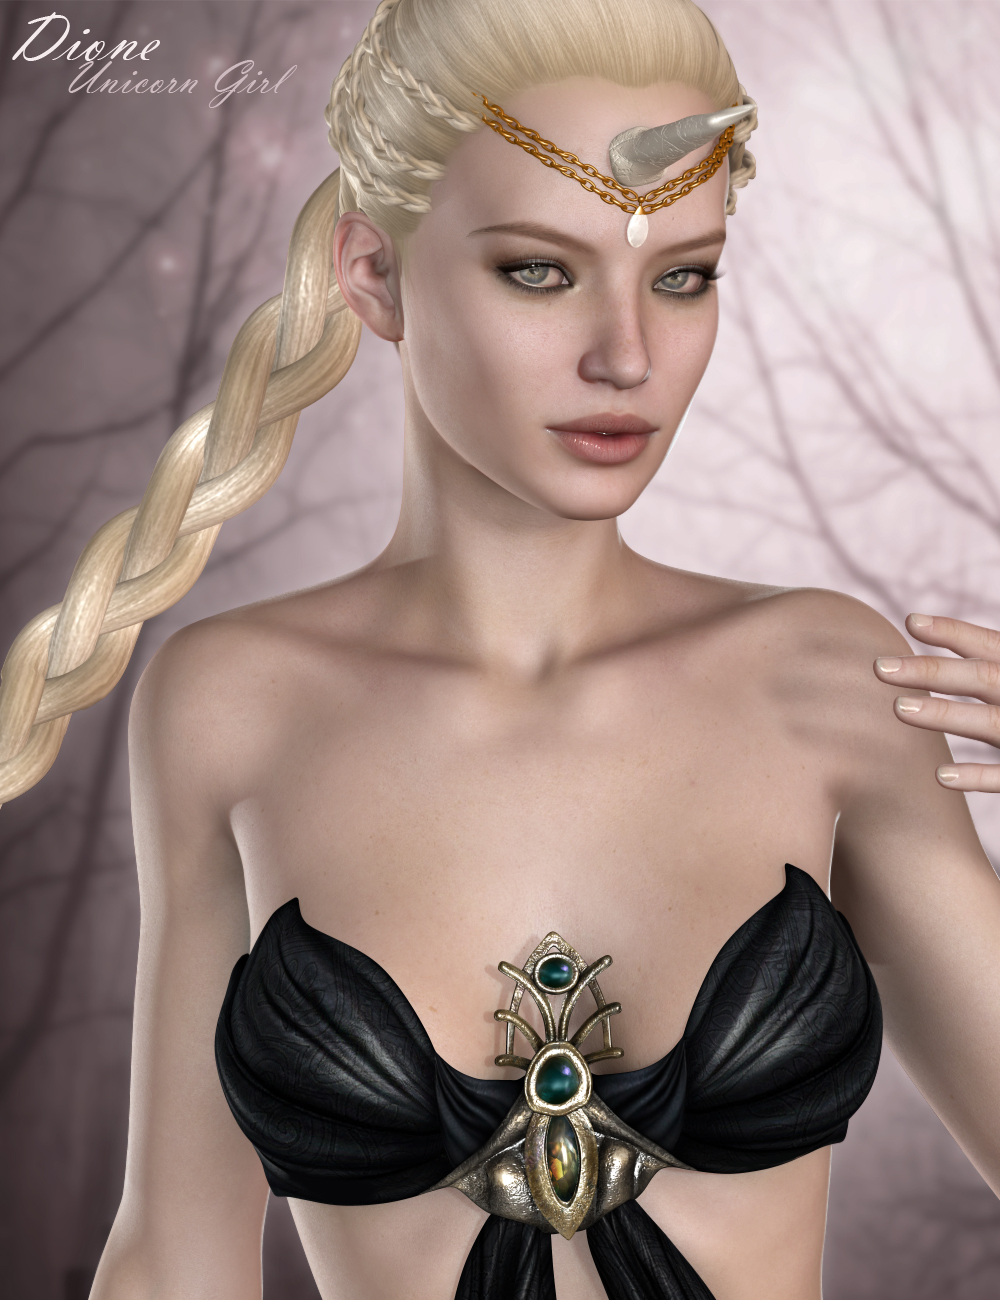 Dione Unicorn Girl HD for Victoria 6 by: Raiya, 3D Models by Daz 3D